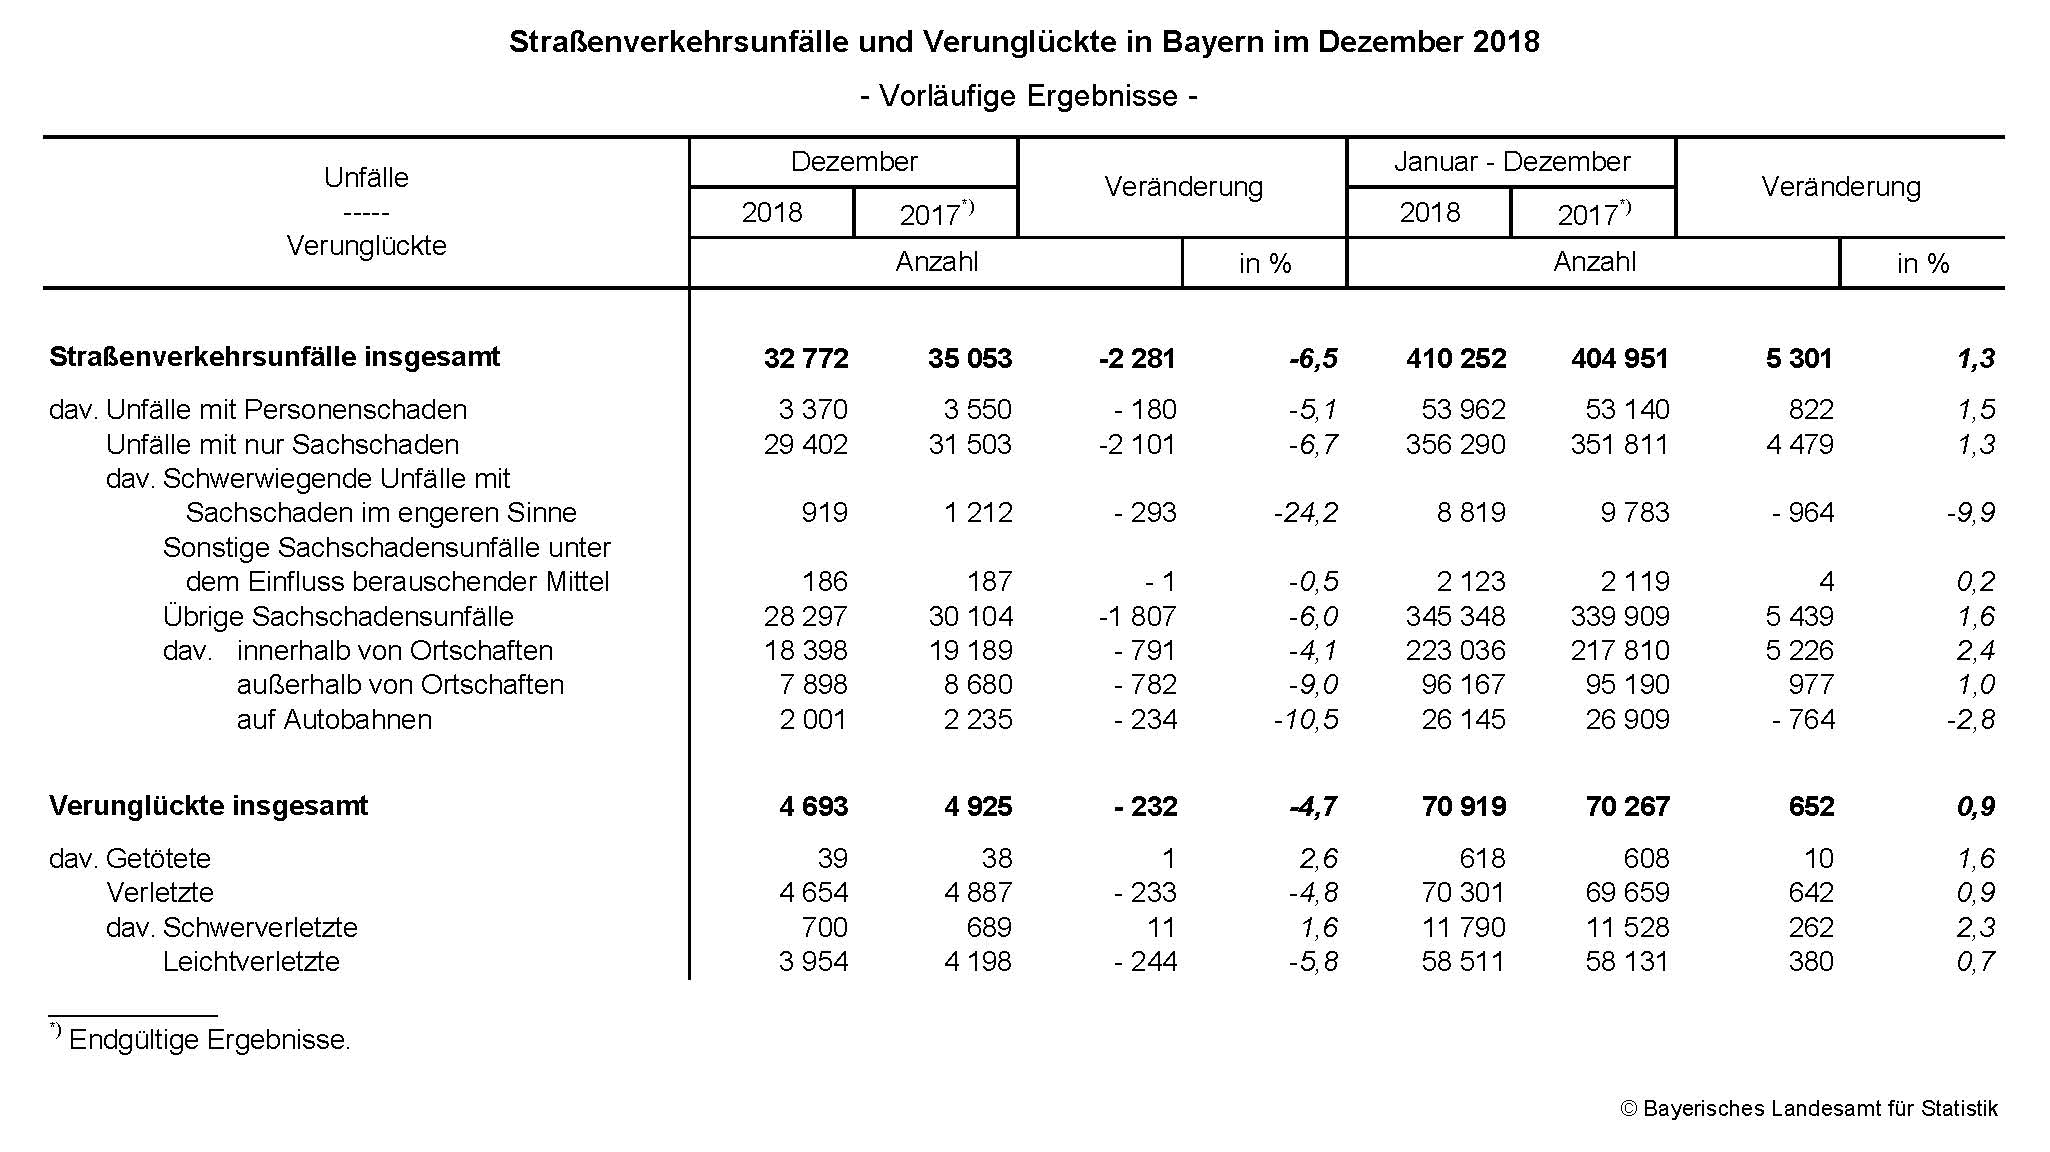 Straßenverkehrsunfälle und Verunglückte in Bayern im Dezember 2018